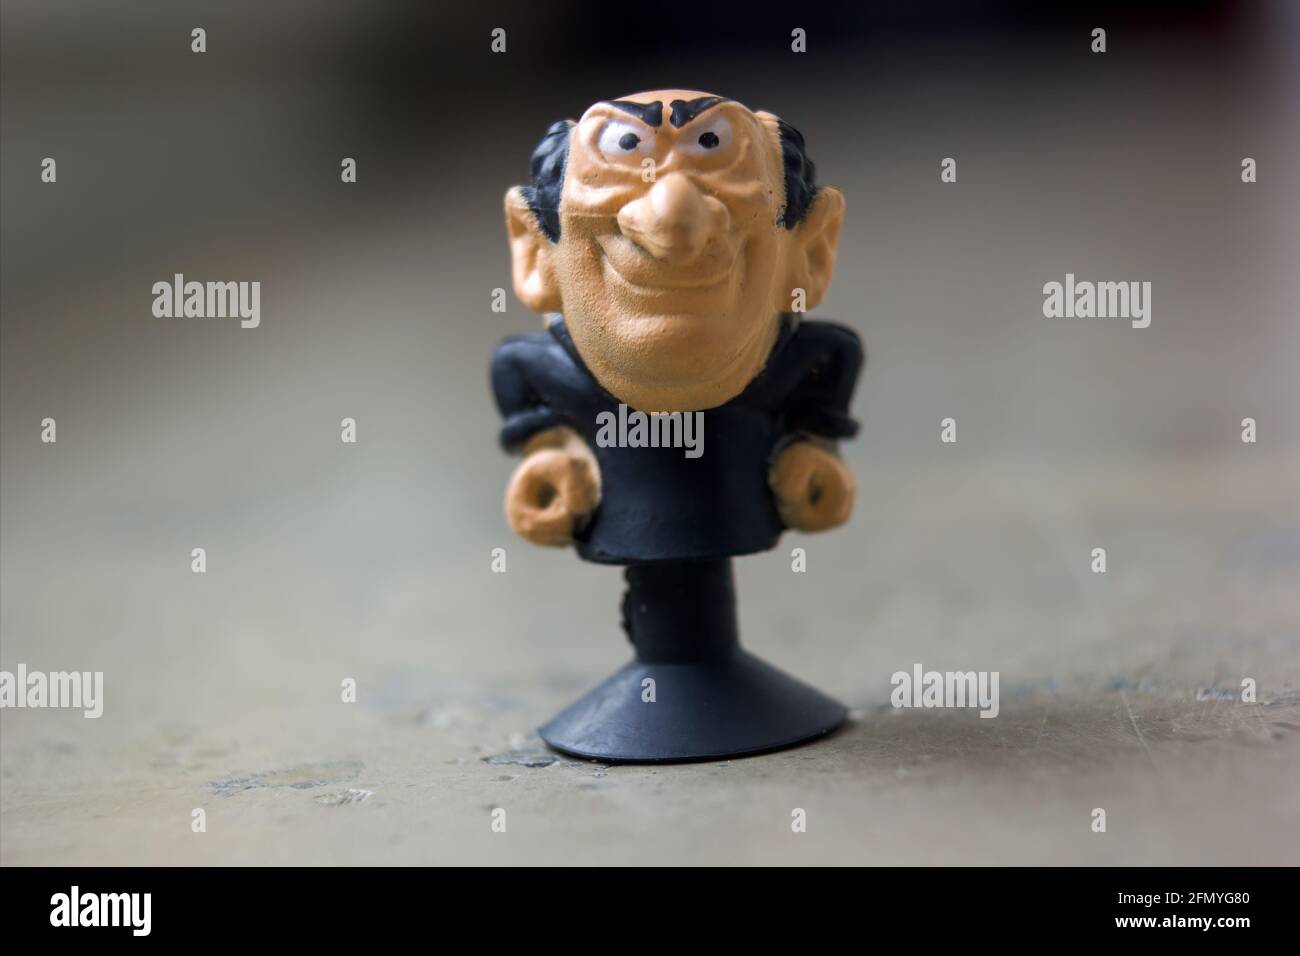 Krakau, Polen - 01. Mai 2021: Extreme Nahaufnahme einer winzigen Gargamel-Spielzeugfigur aus Gummi, einer fiktiven Figur aus den Schlümpfen. Er ist ein böser w Stockfoto